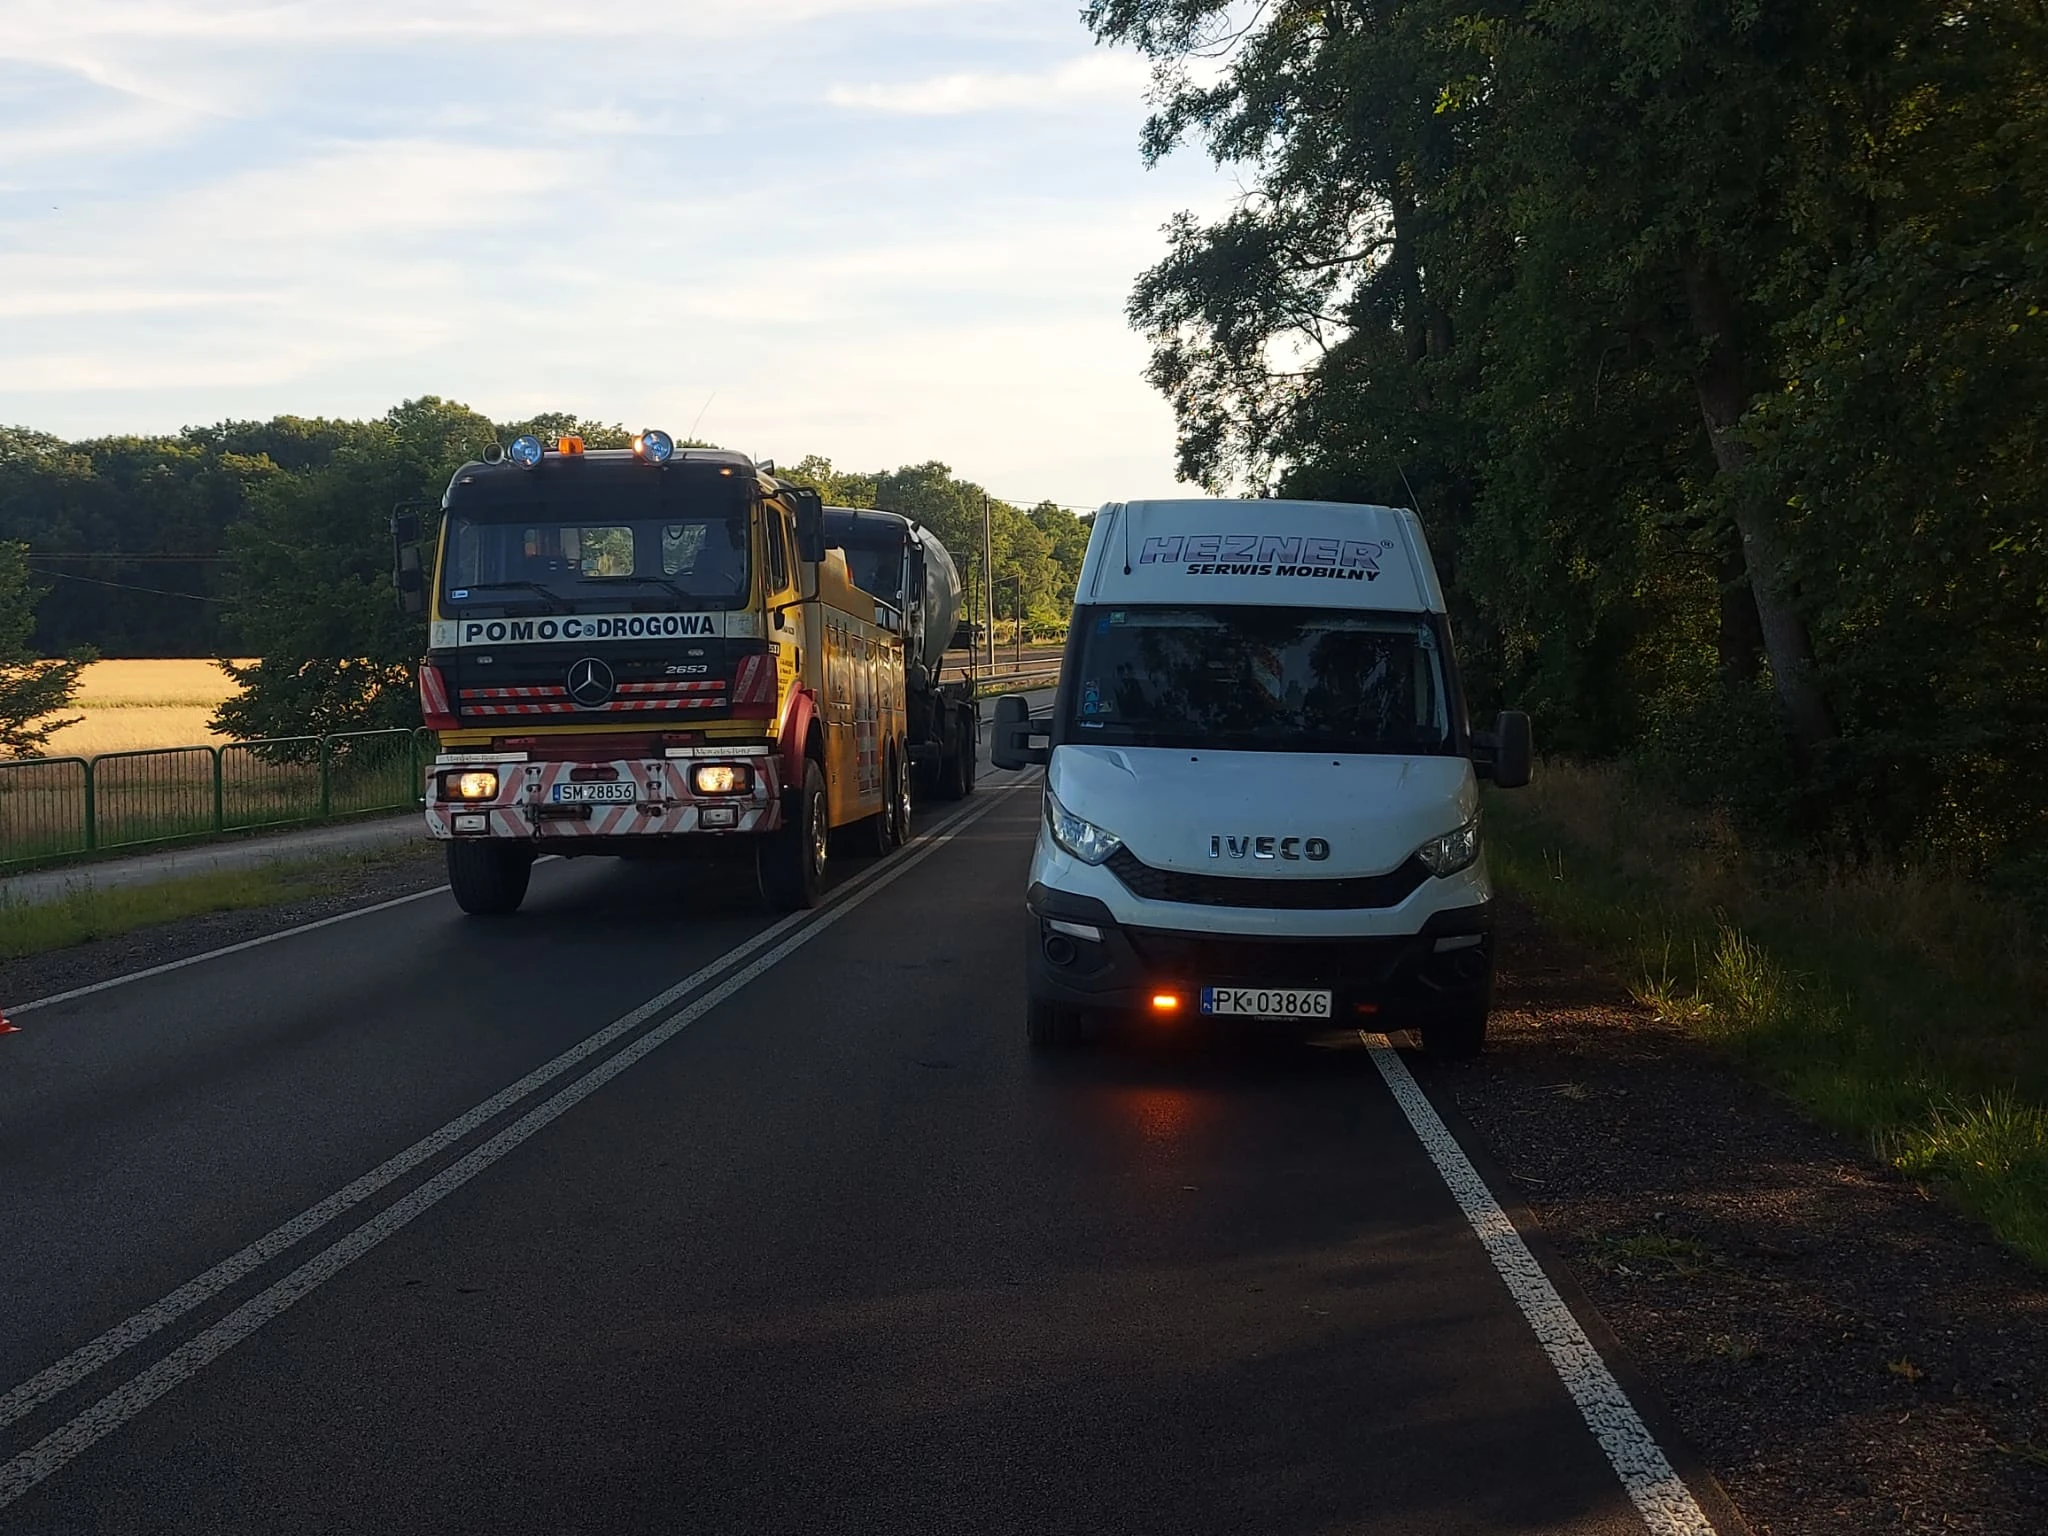 Mobilny serwis TIR oraz pomoc drogowa w akcji na drodze